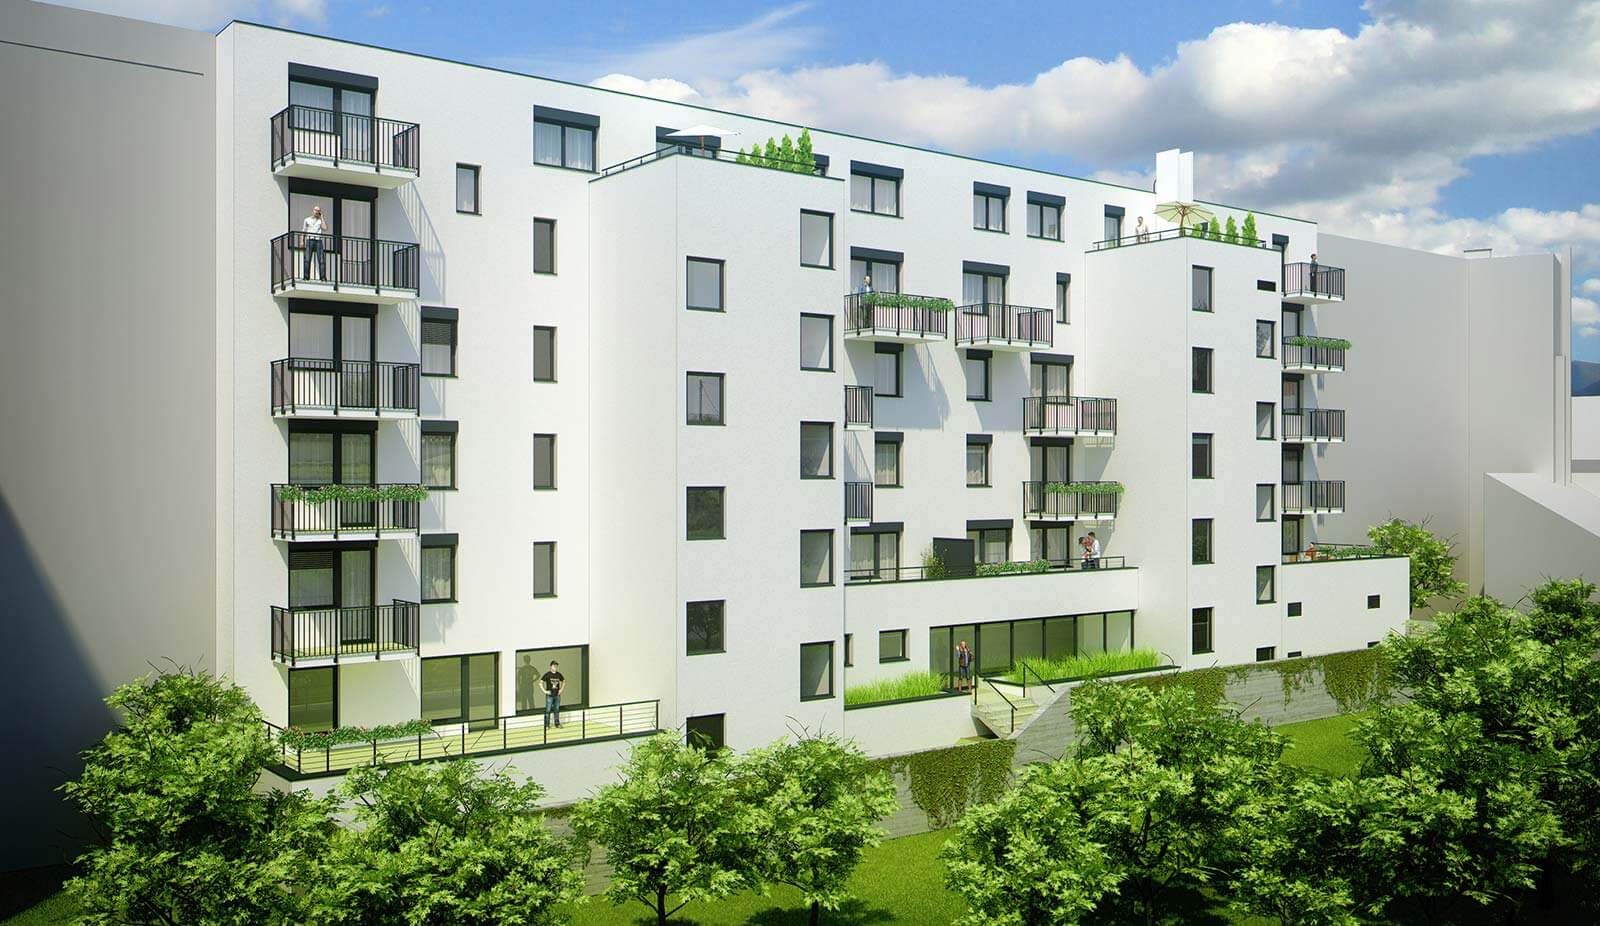 Predané: Novostavba posledný 1 izbový byt, širšie centrum v Bratislave, Beskydská ulica, 44,87m2, štandard, terasa 40m2-8